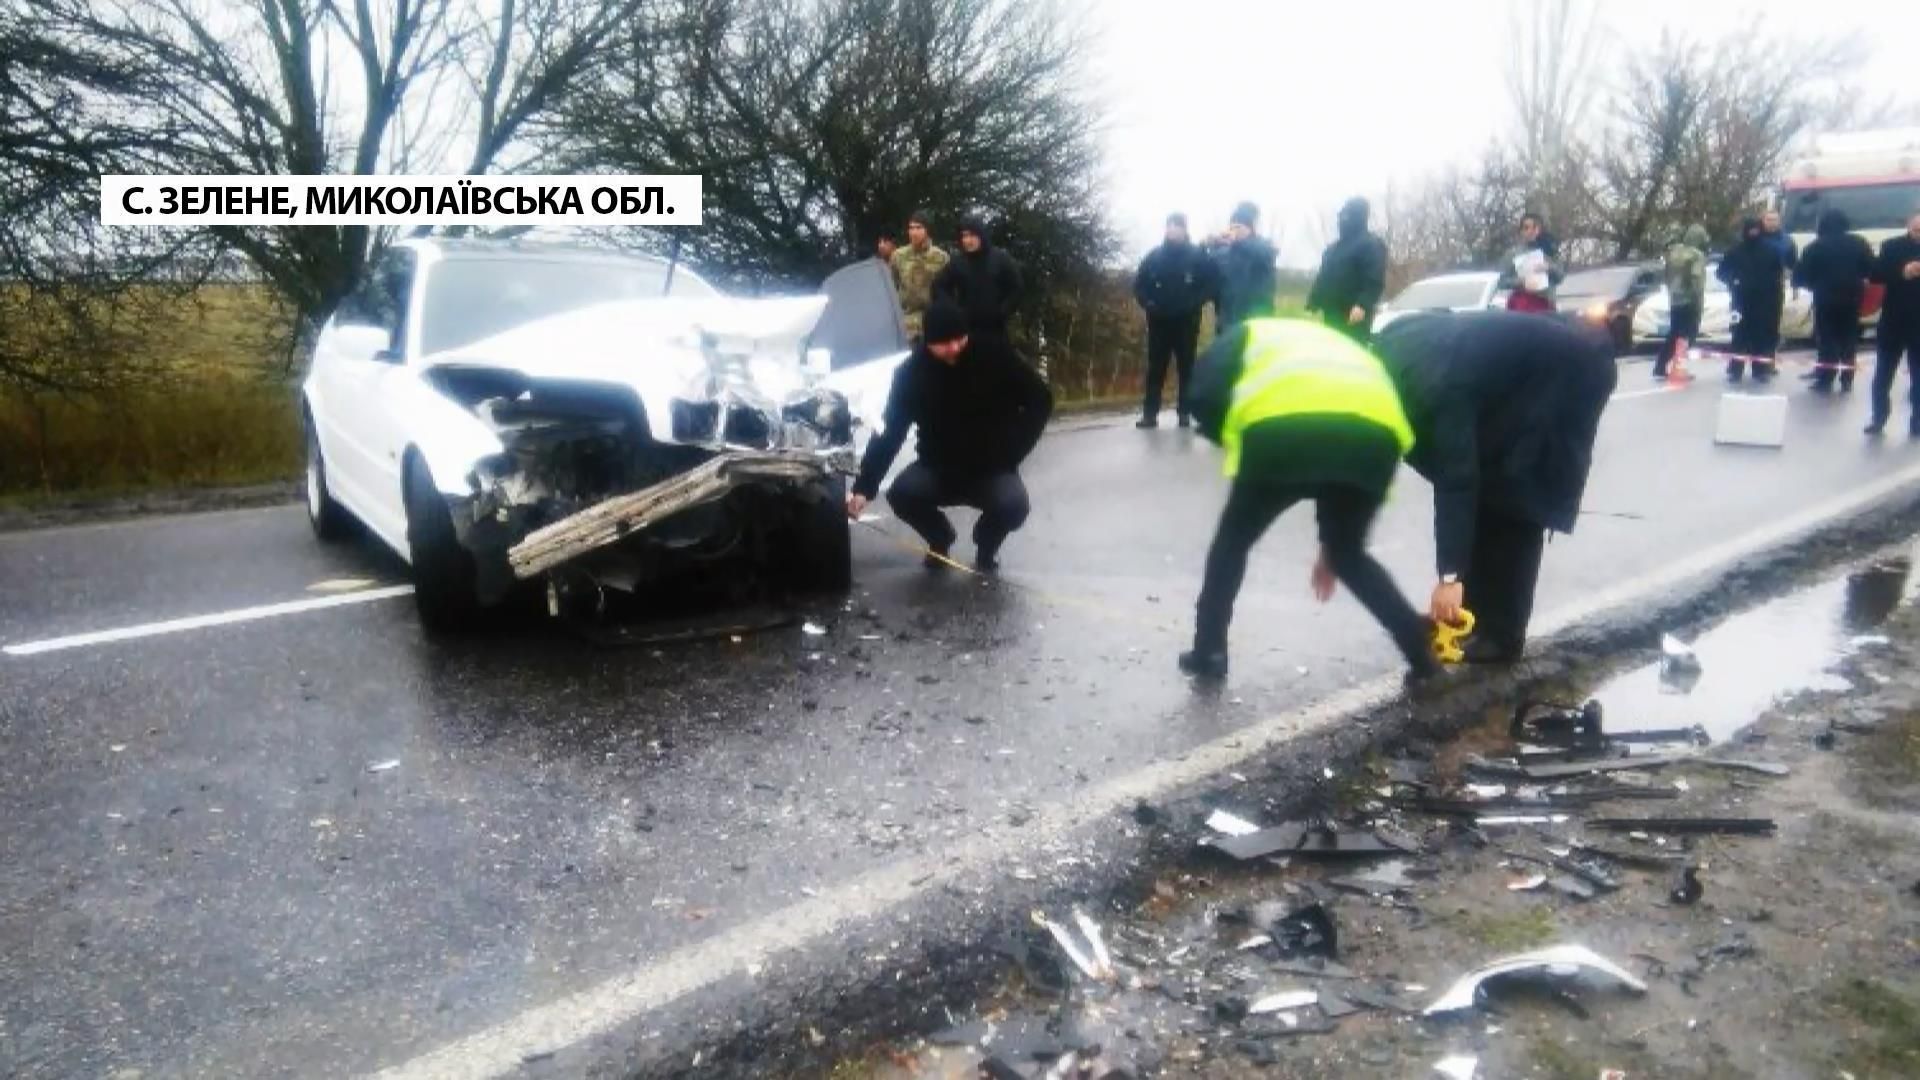 На Миколаївщині сталася жахлива аварія. Серед загиблих – дитина